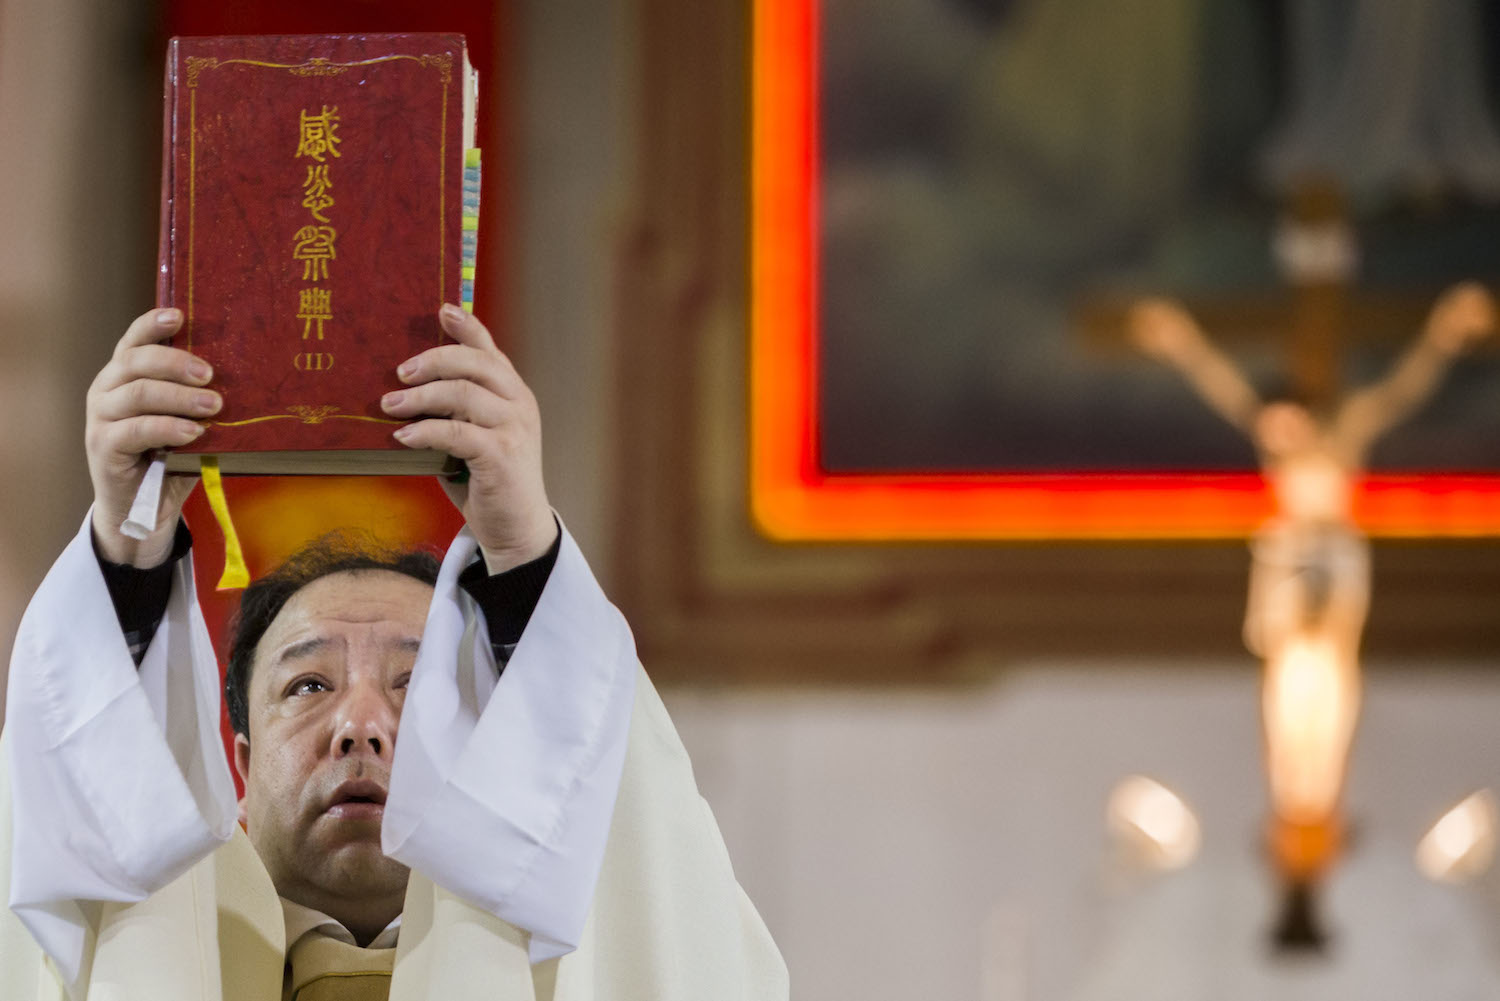 In Cina i cristiani furzati à pregà per i suldati cumunisti morti